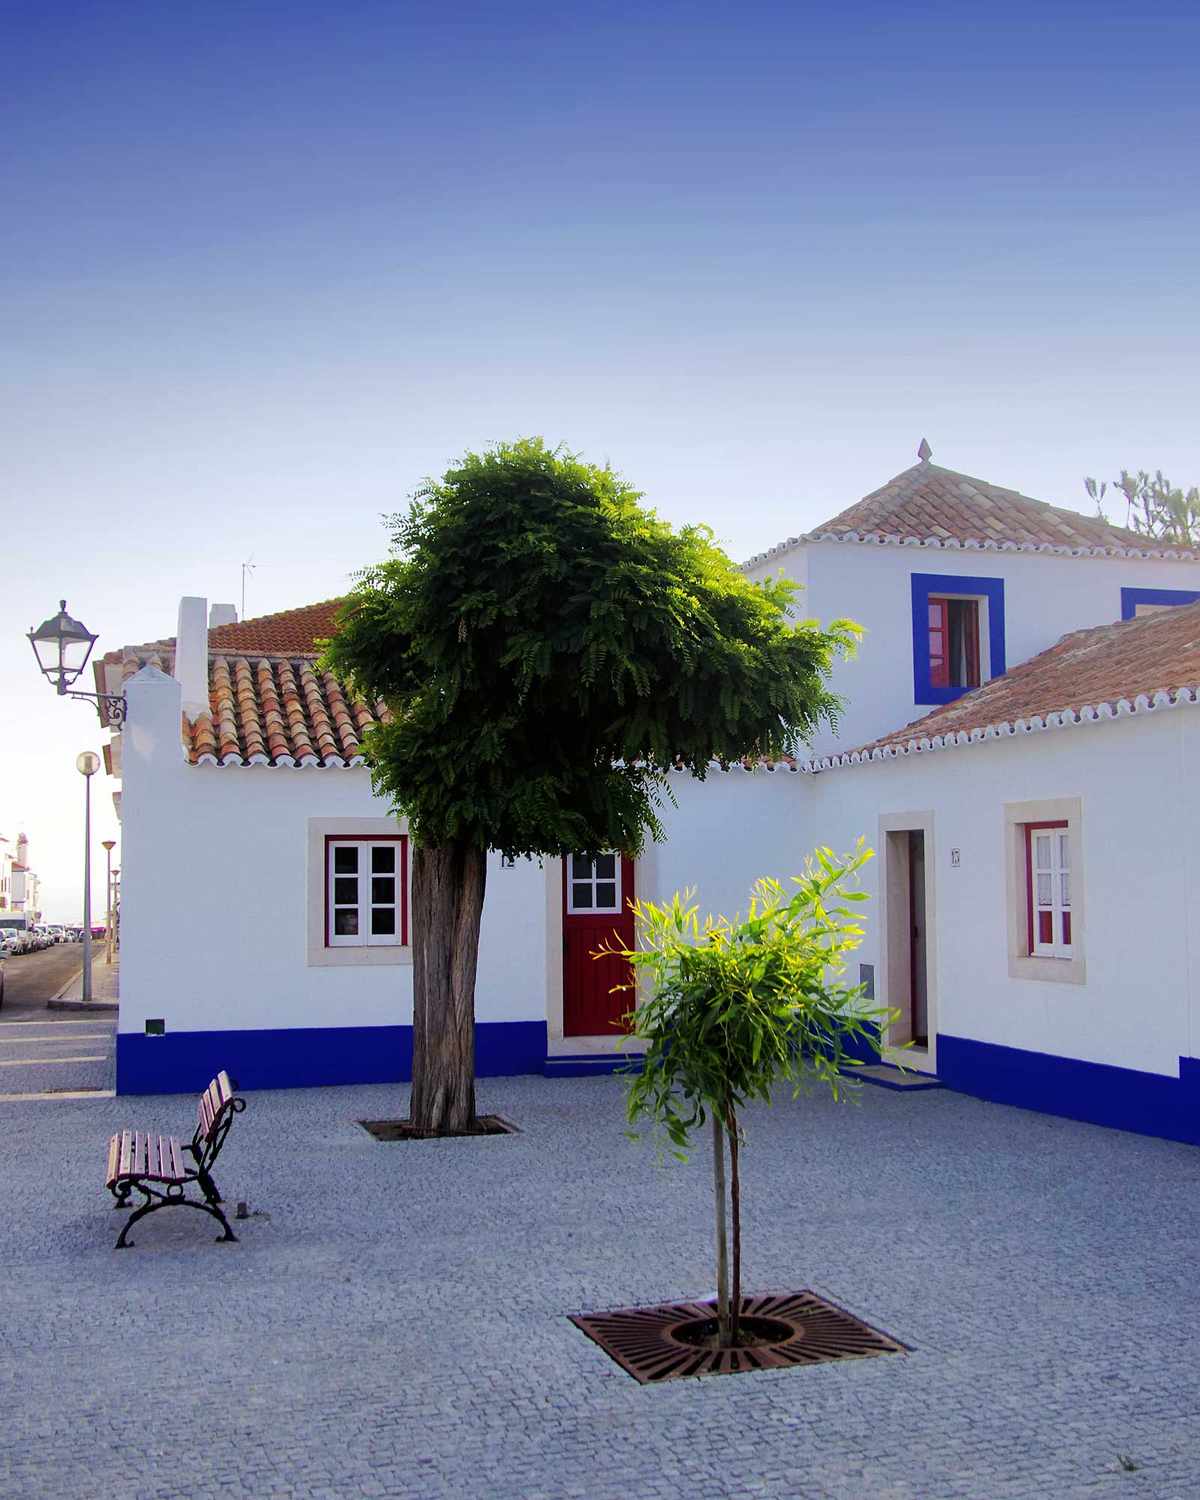 The town square of Porto Covo, Portugal